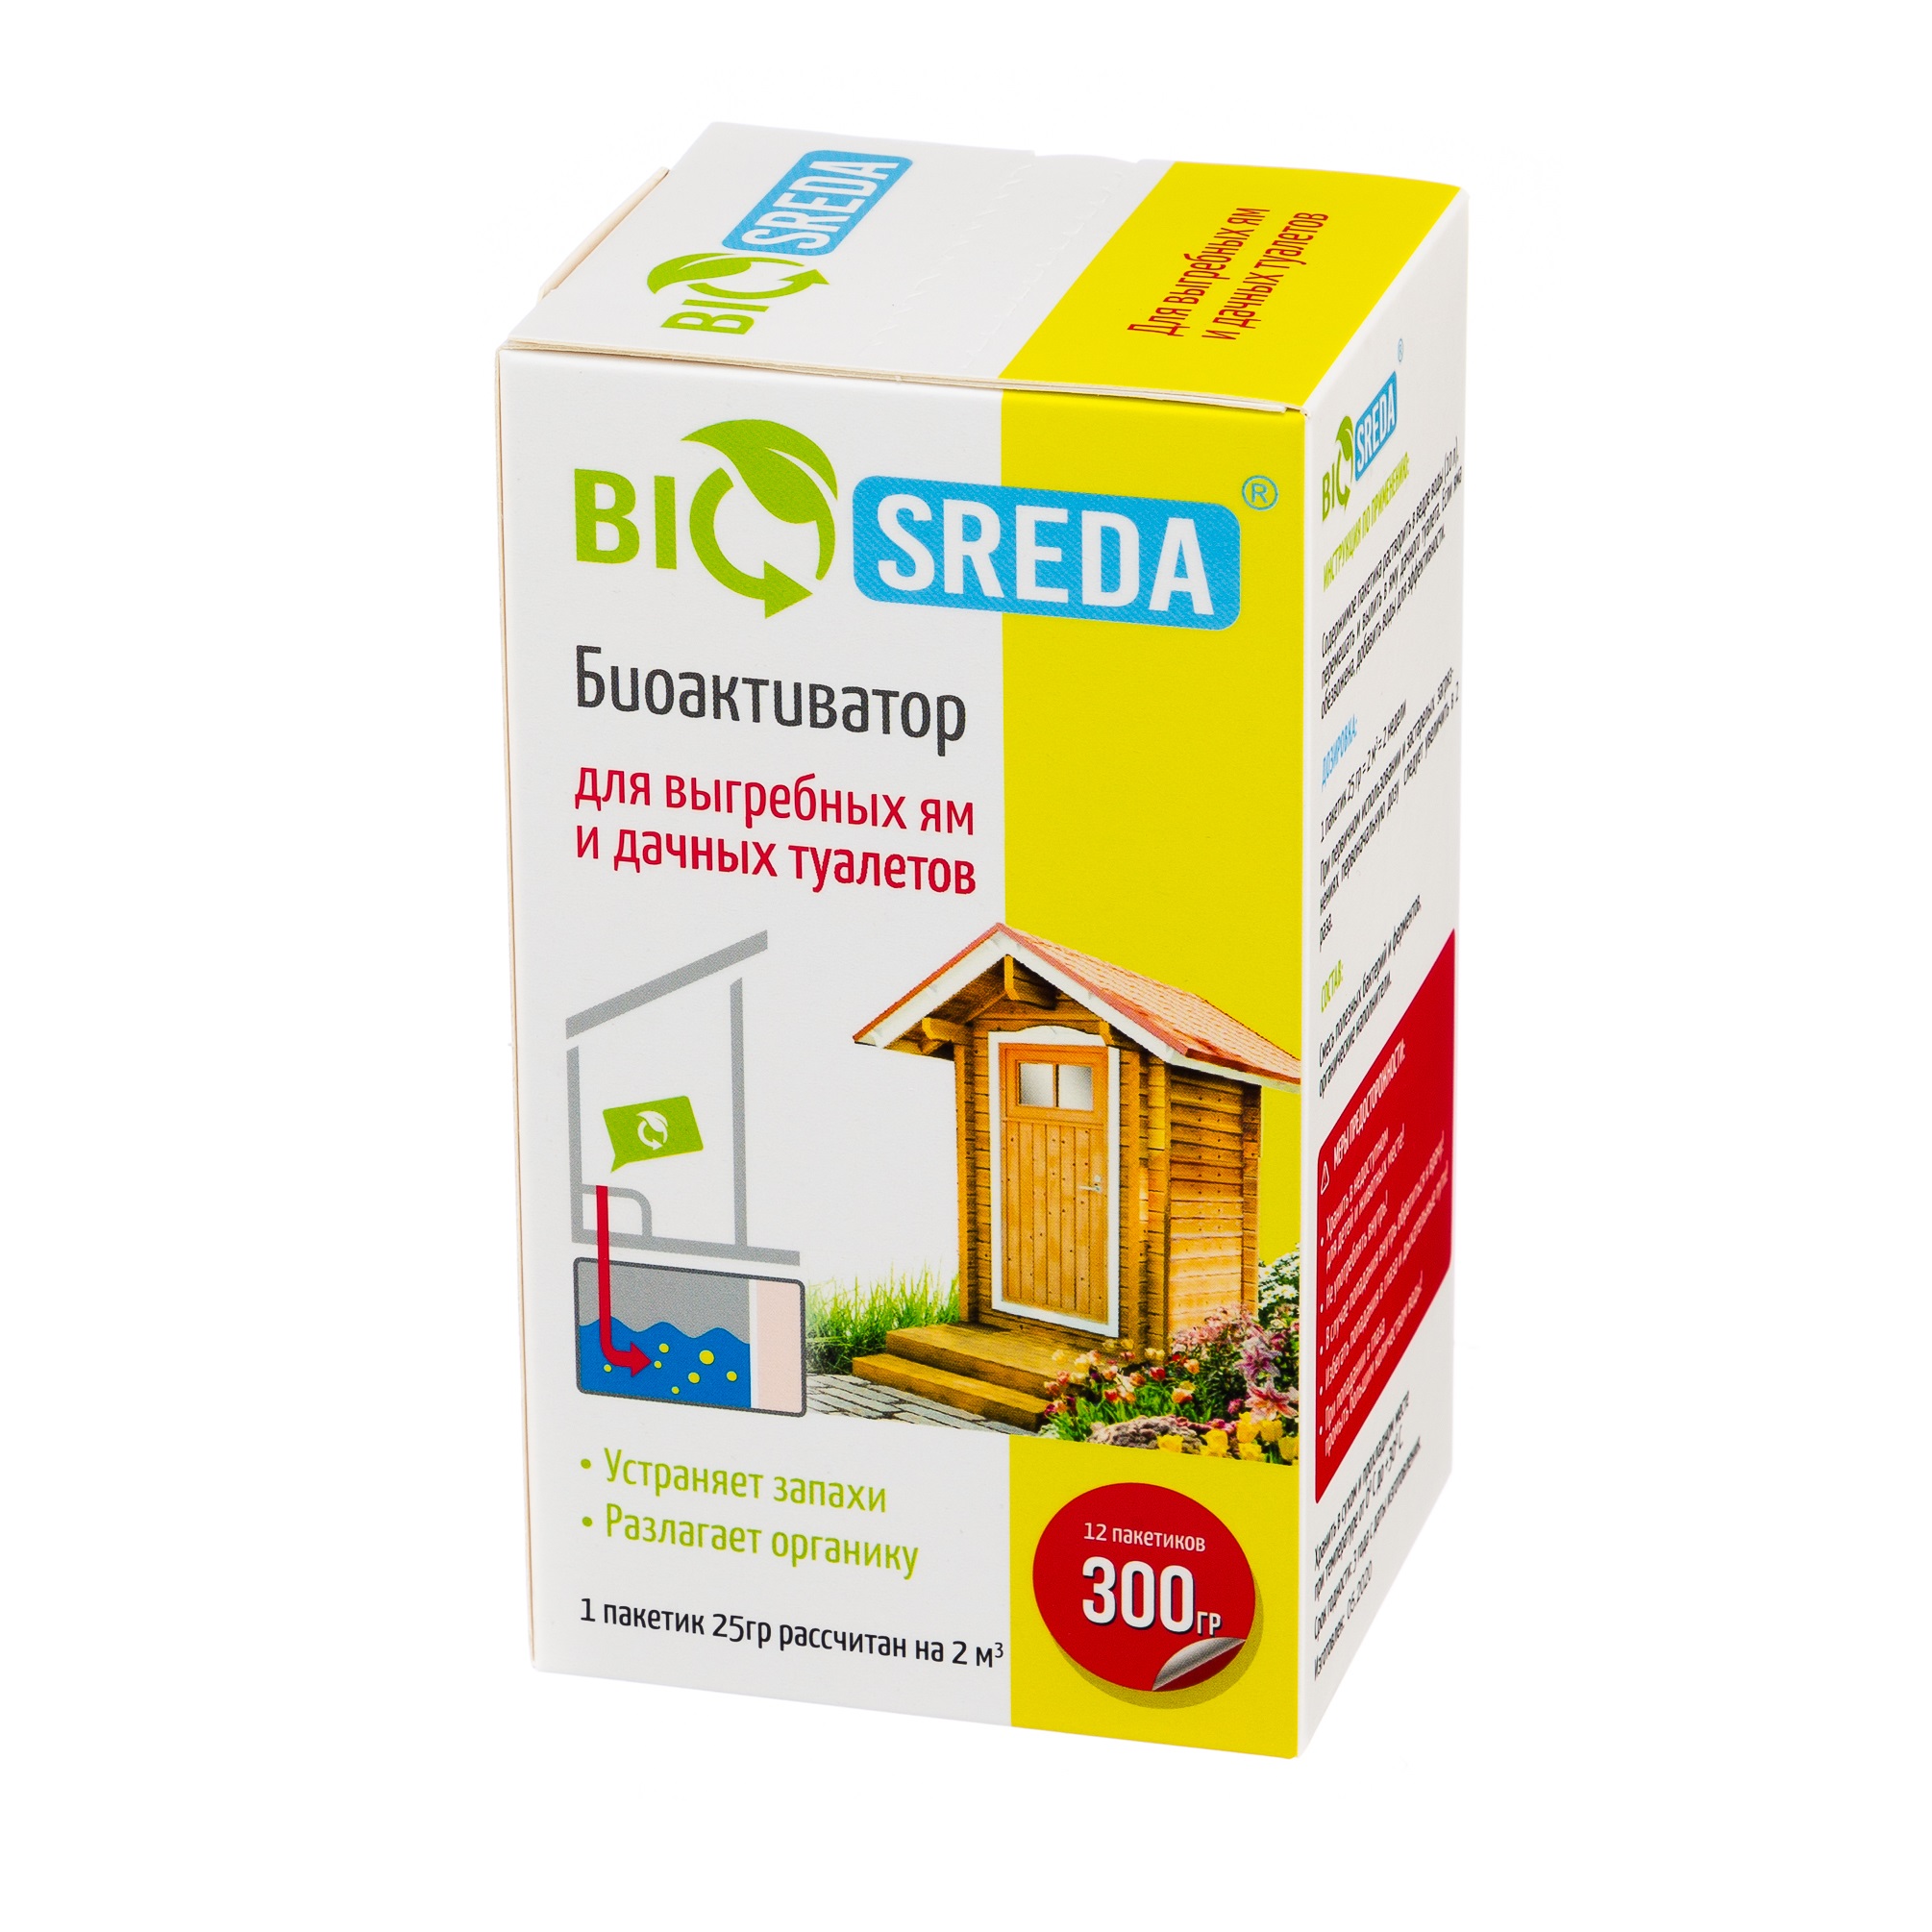 Биоактиватор Biosreda для выгребных ям и дачных туалетов, 300 гр 12 пакетов биоактиватор для дачных туалетов лама торф